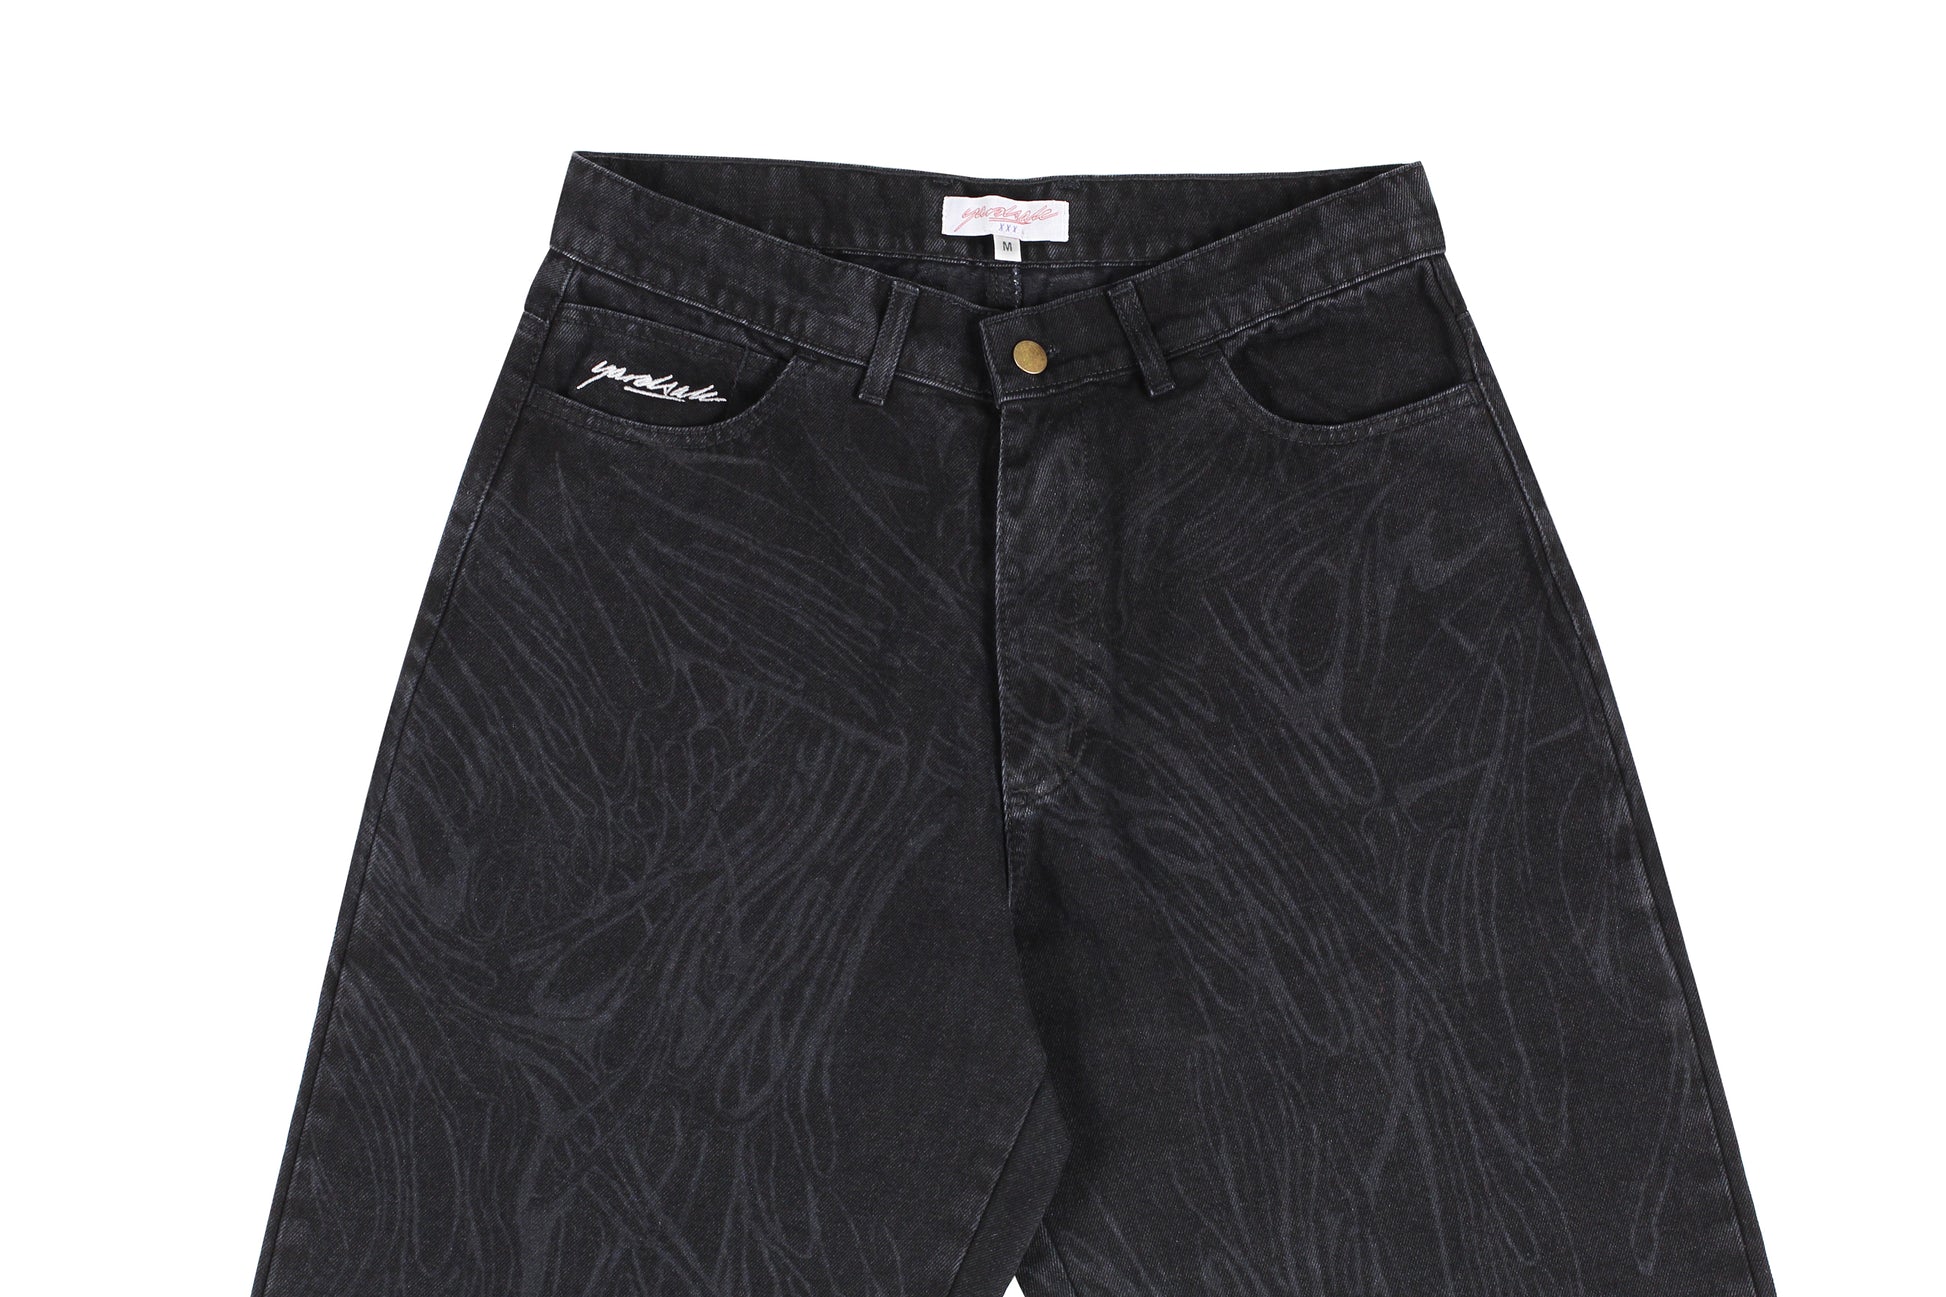 Yardsale Phantasy Jeans Black - デニム/ジーンズ